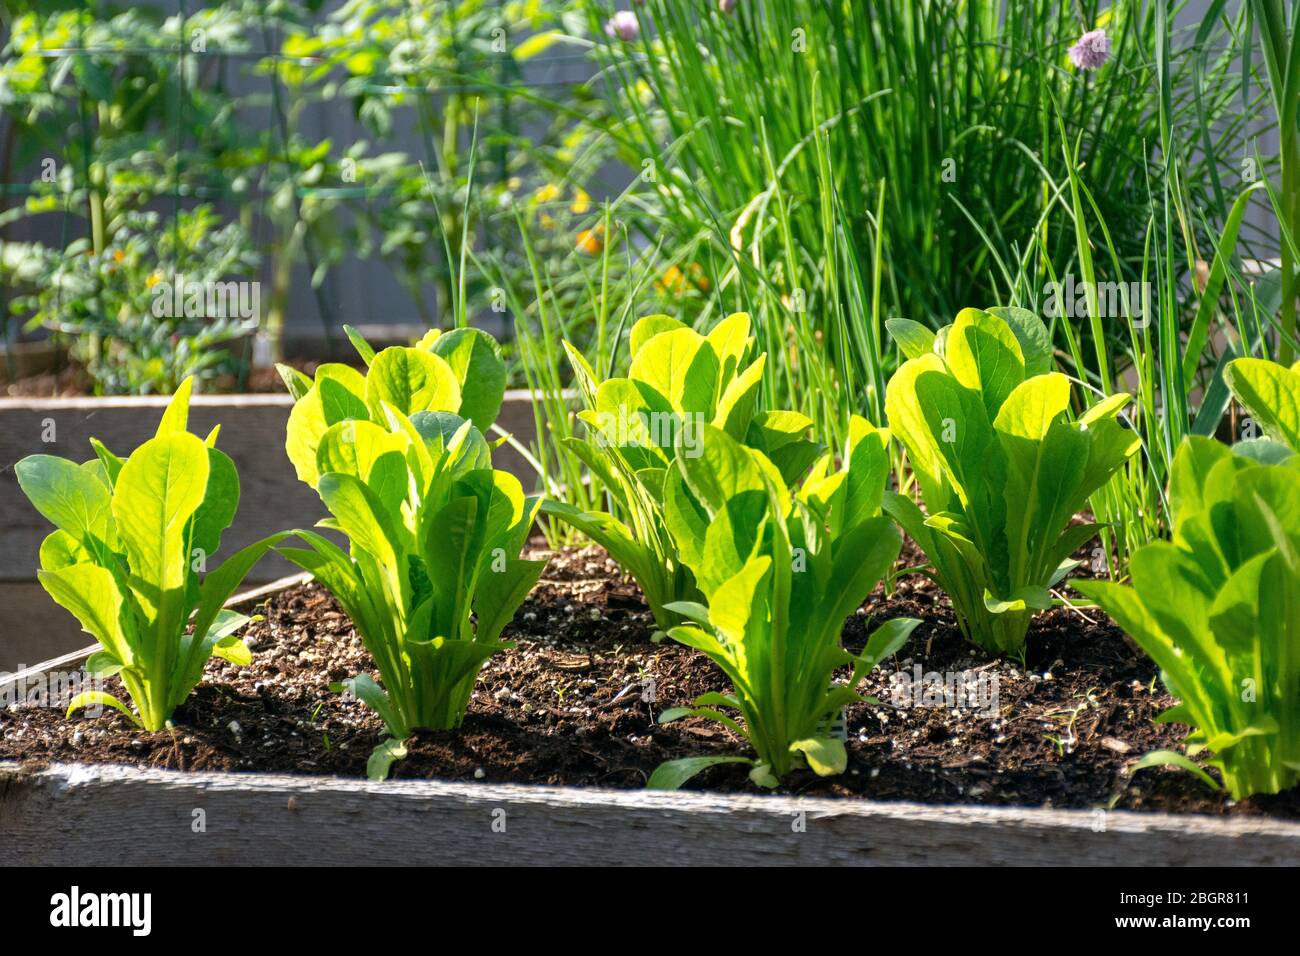 Parte della crescita della vostra propria tendenza alimentare, questo giardino di verdure cortile contiene grandi letti sopraelevati per la coltivazione di verdure ed erbe durante l'estate. Foto Stock